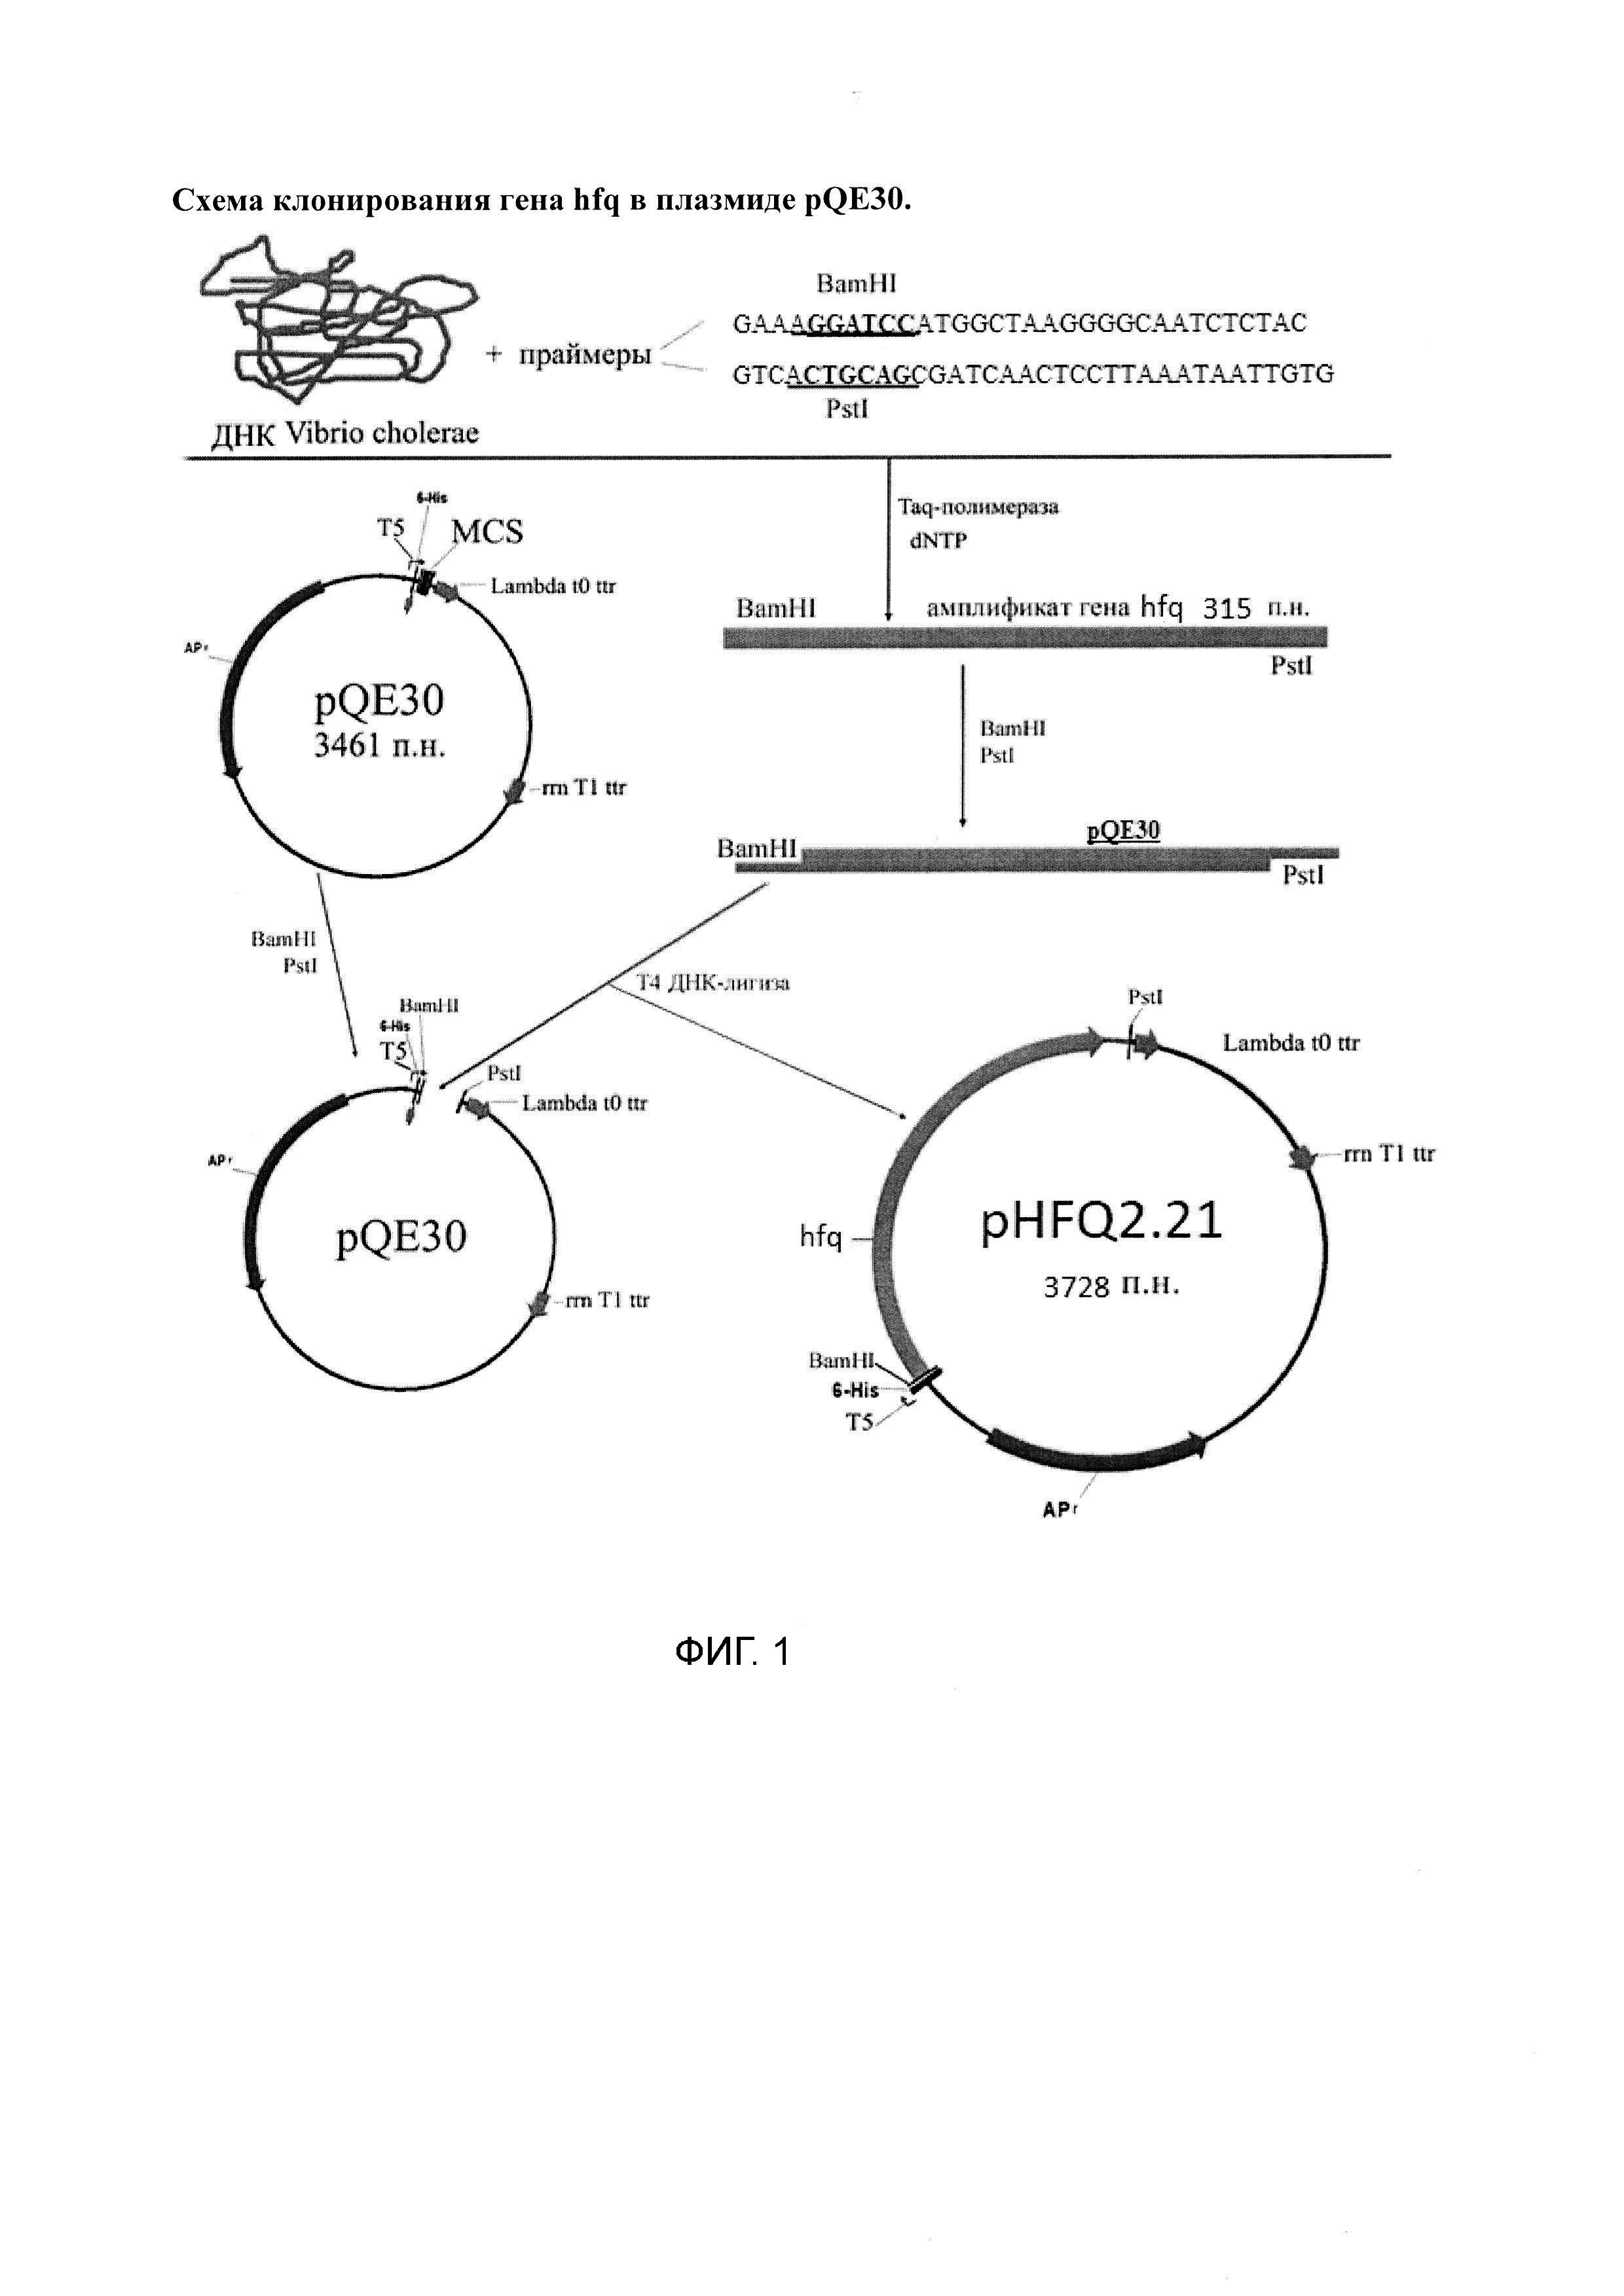 Рекомбинантная плазмида, экспрессирующая клонированный ген шаперона HFQ Vibrio cholerae, и штамм Escherichia coli - суперпродуцент шаперона HFQ Vibrio cholerae